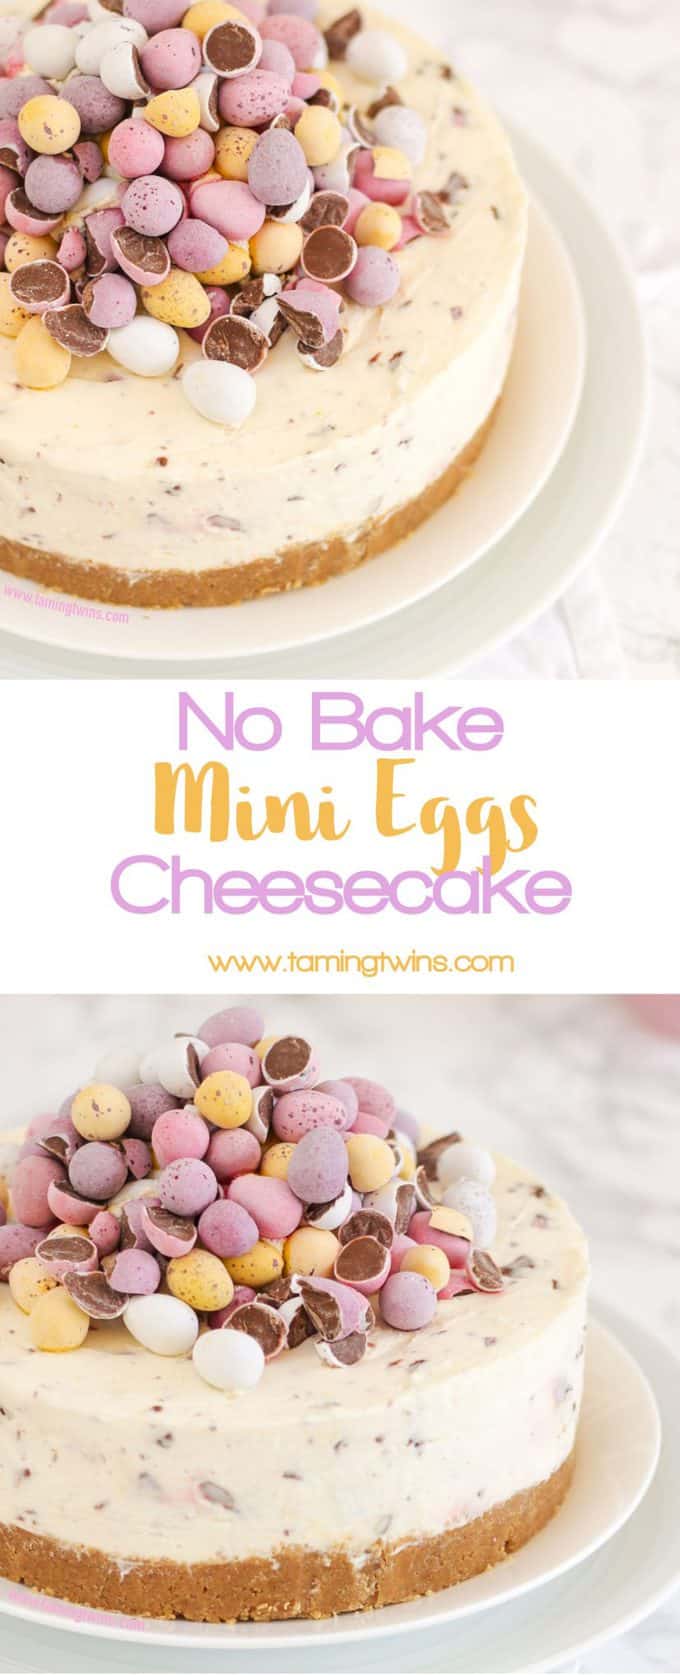 no bake mini egg cheesecake – the easter recipe!